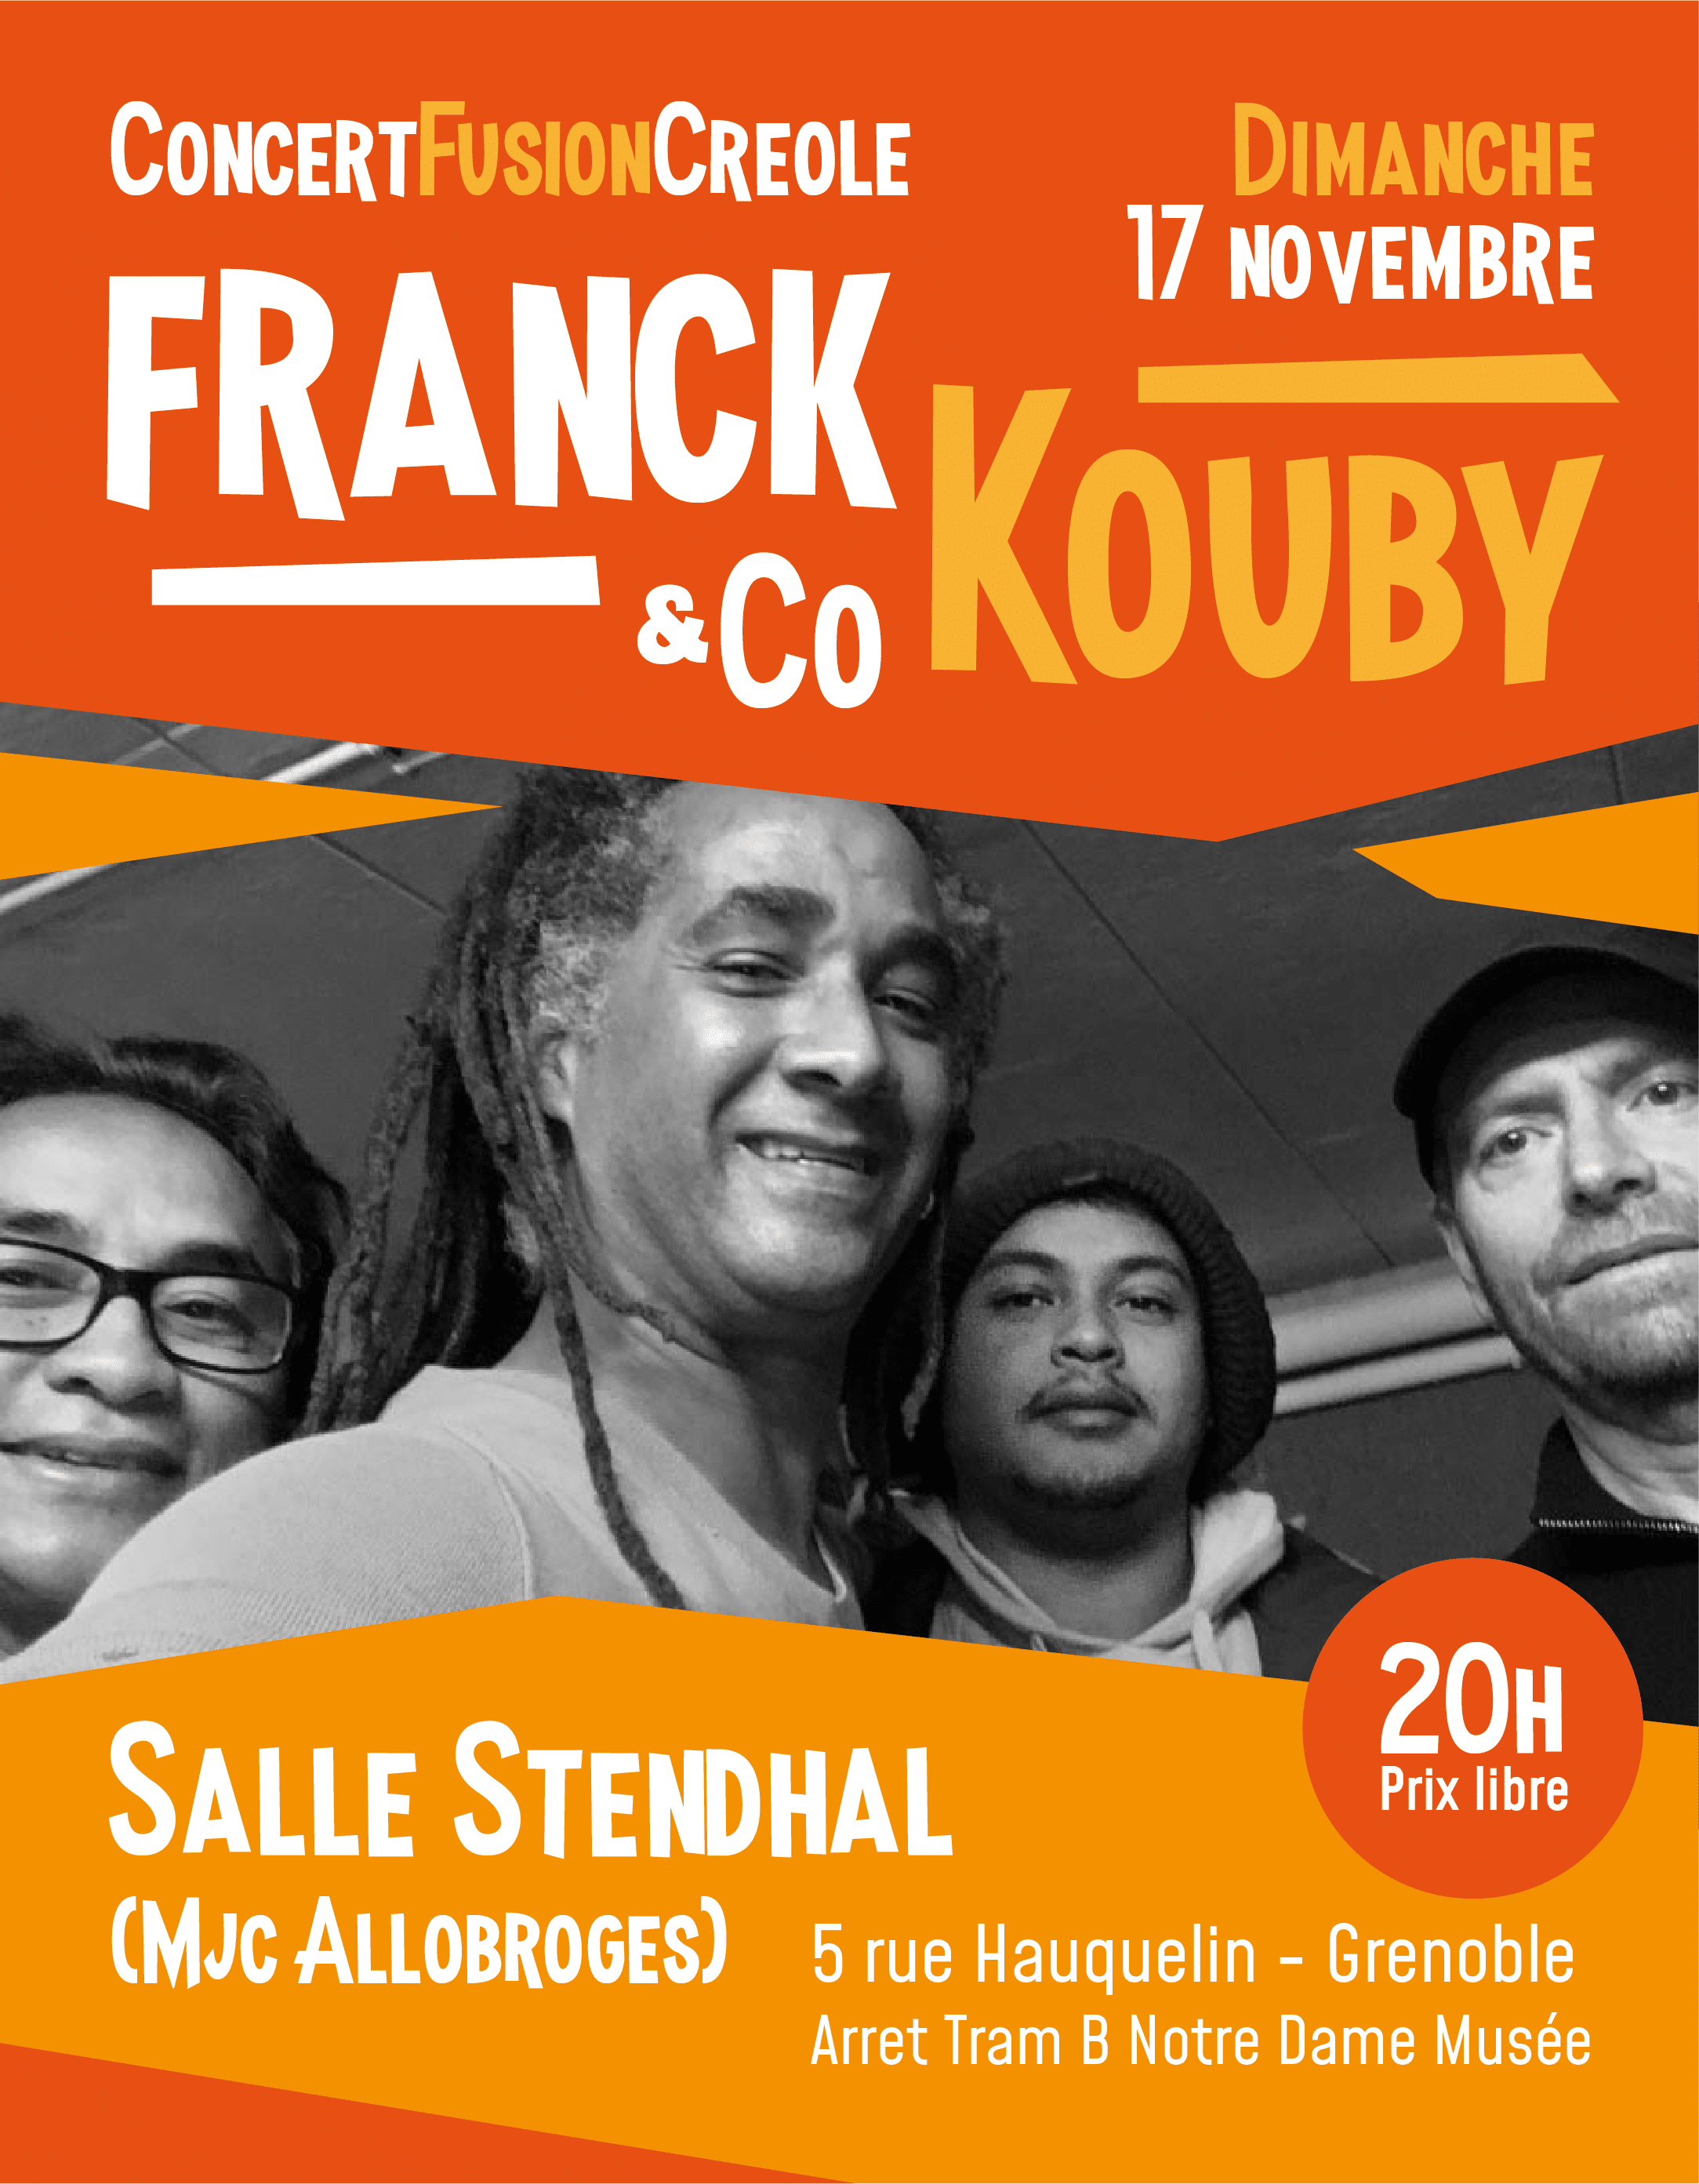 Lire la suite à propos de l’article Concert de Franck Kouby & Co dimanche 17 novembre 2019 à 20h00.